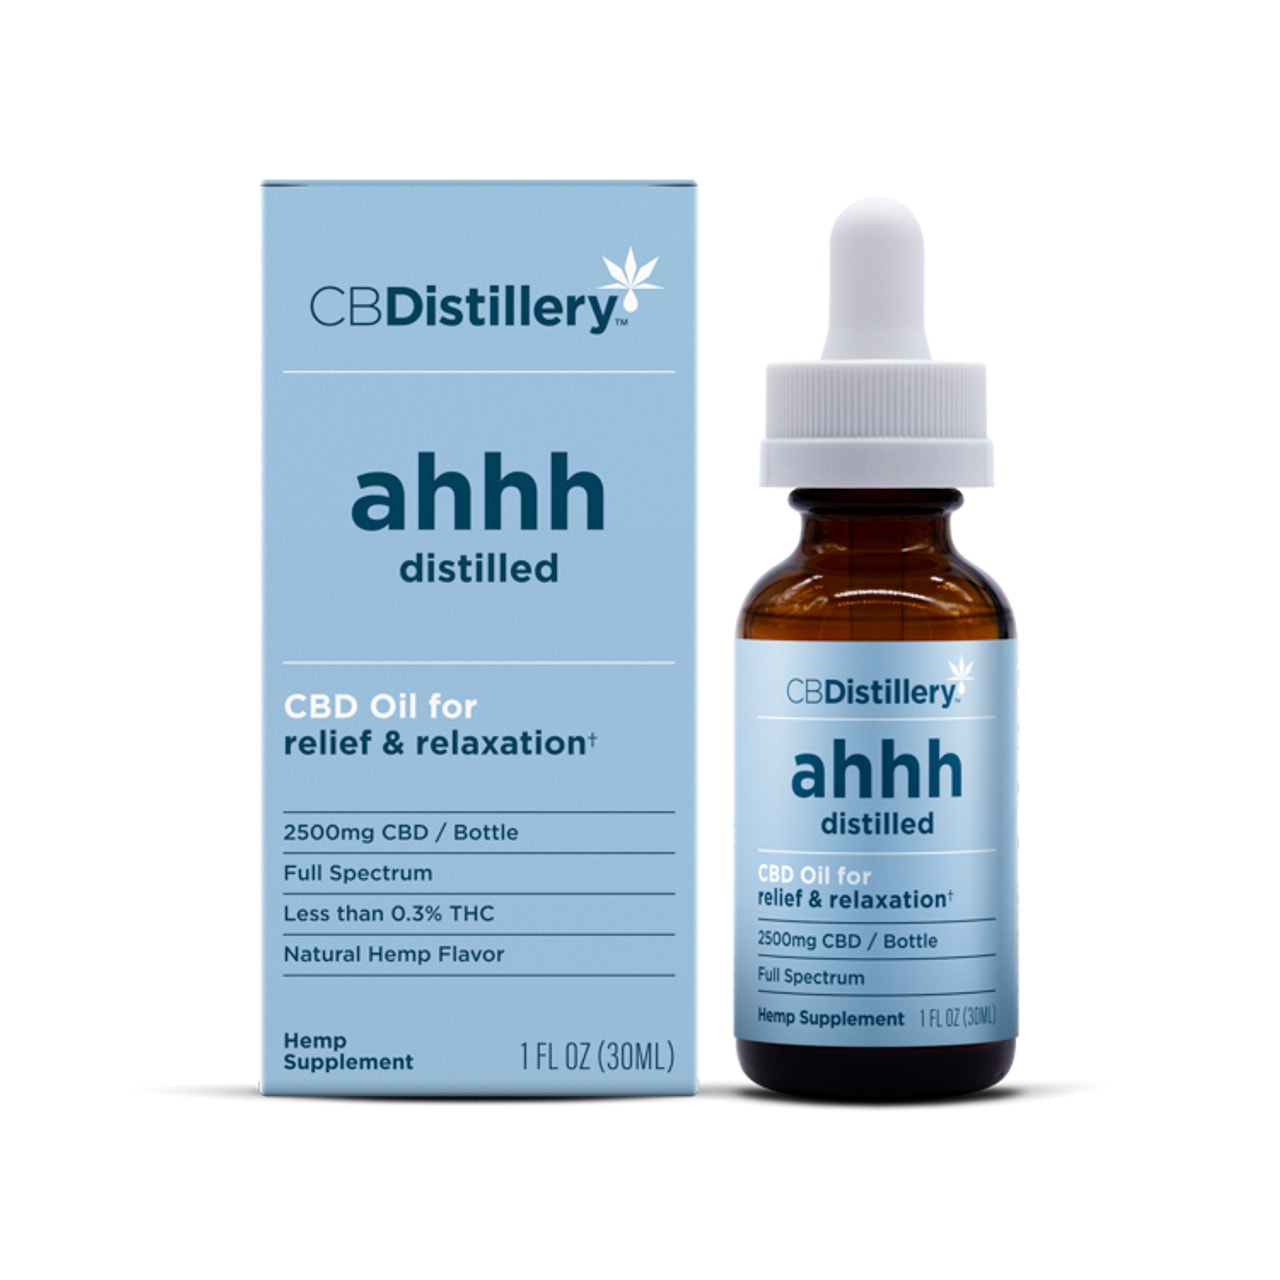 CBDistillery, Ahhh Distilled CBD Oil for Relief & Relaxation, Full Spectrum, 1oz, 2500mg CBD